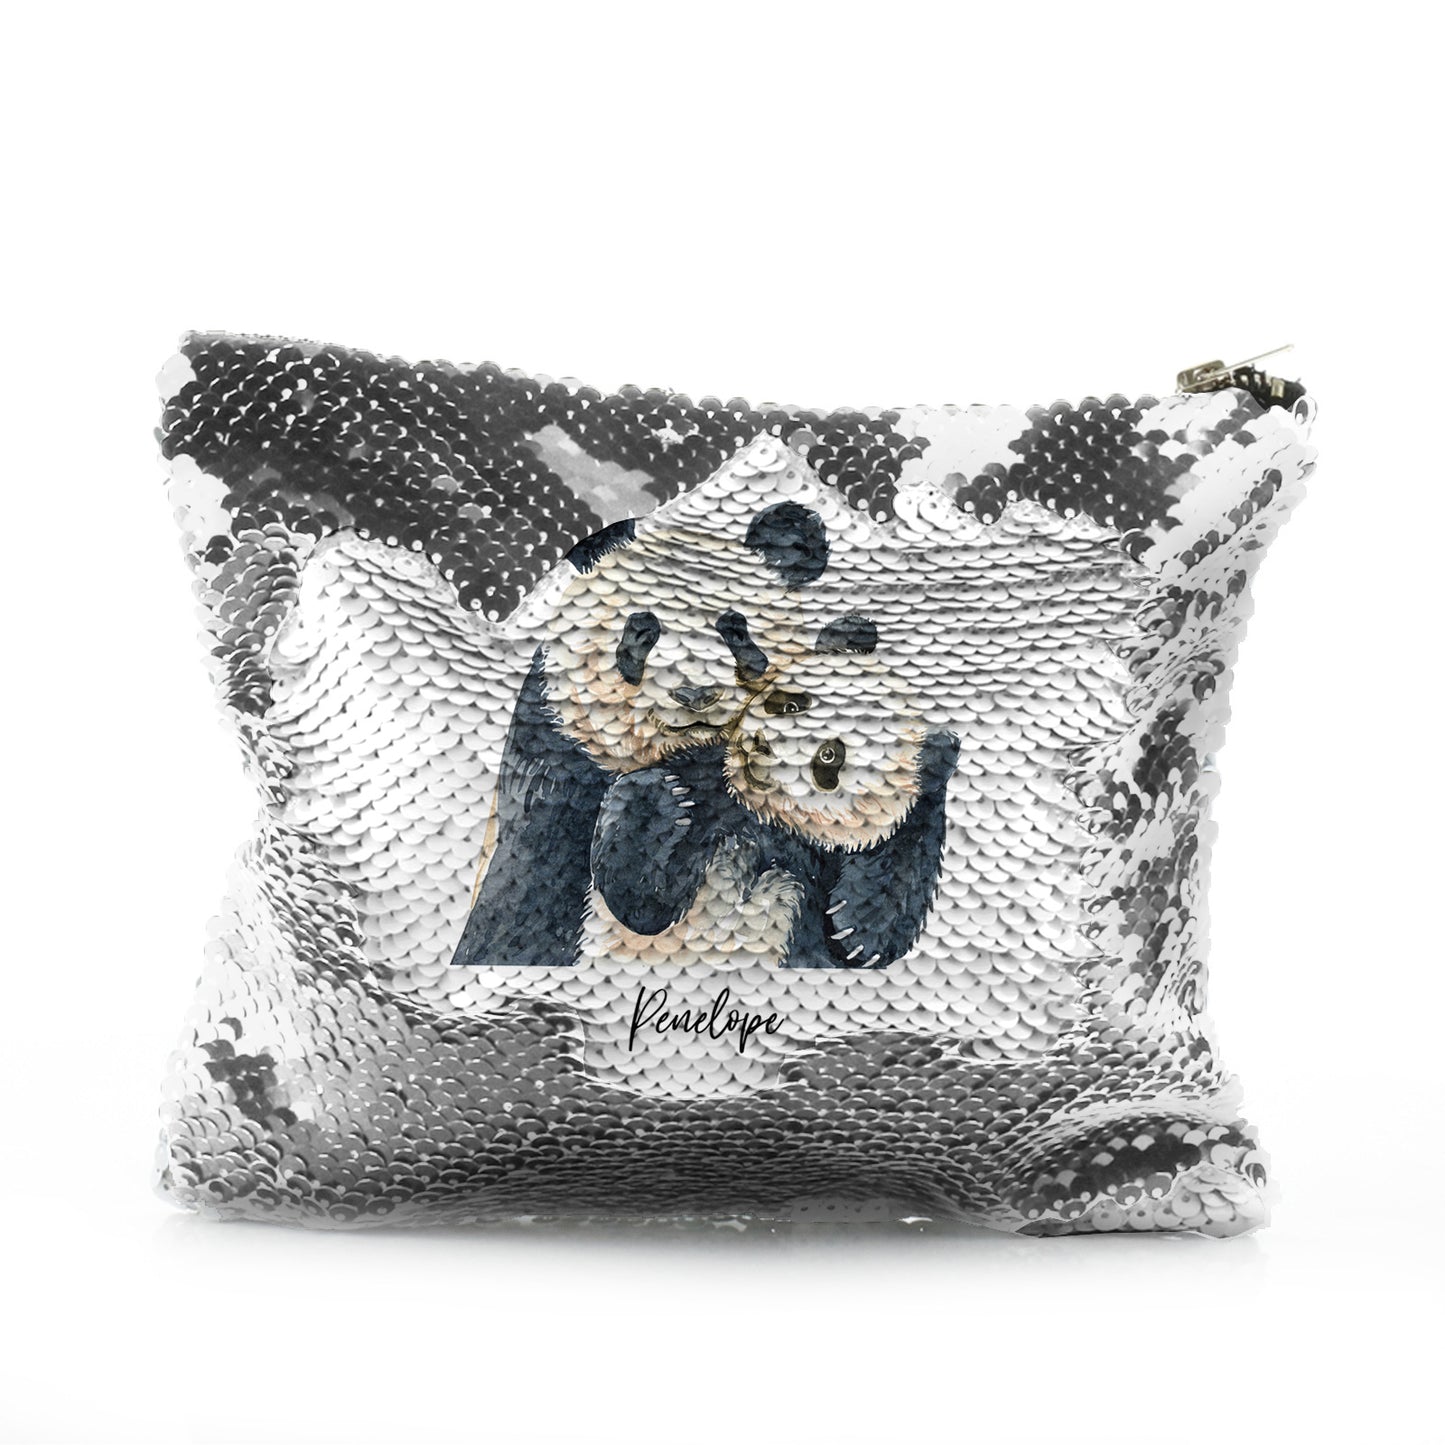 Personalisierte Pailletten-Reißverschlusstasche mit Begrüßungstext und umarmenden Mama- und Baby-Pandas